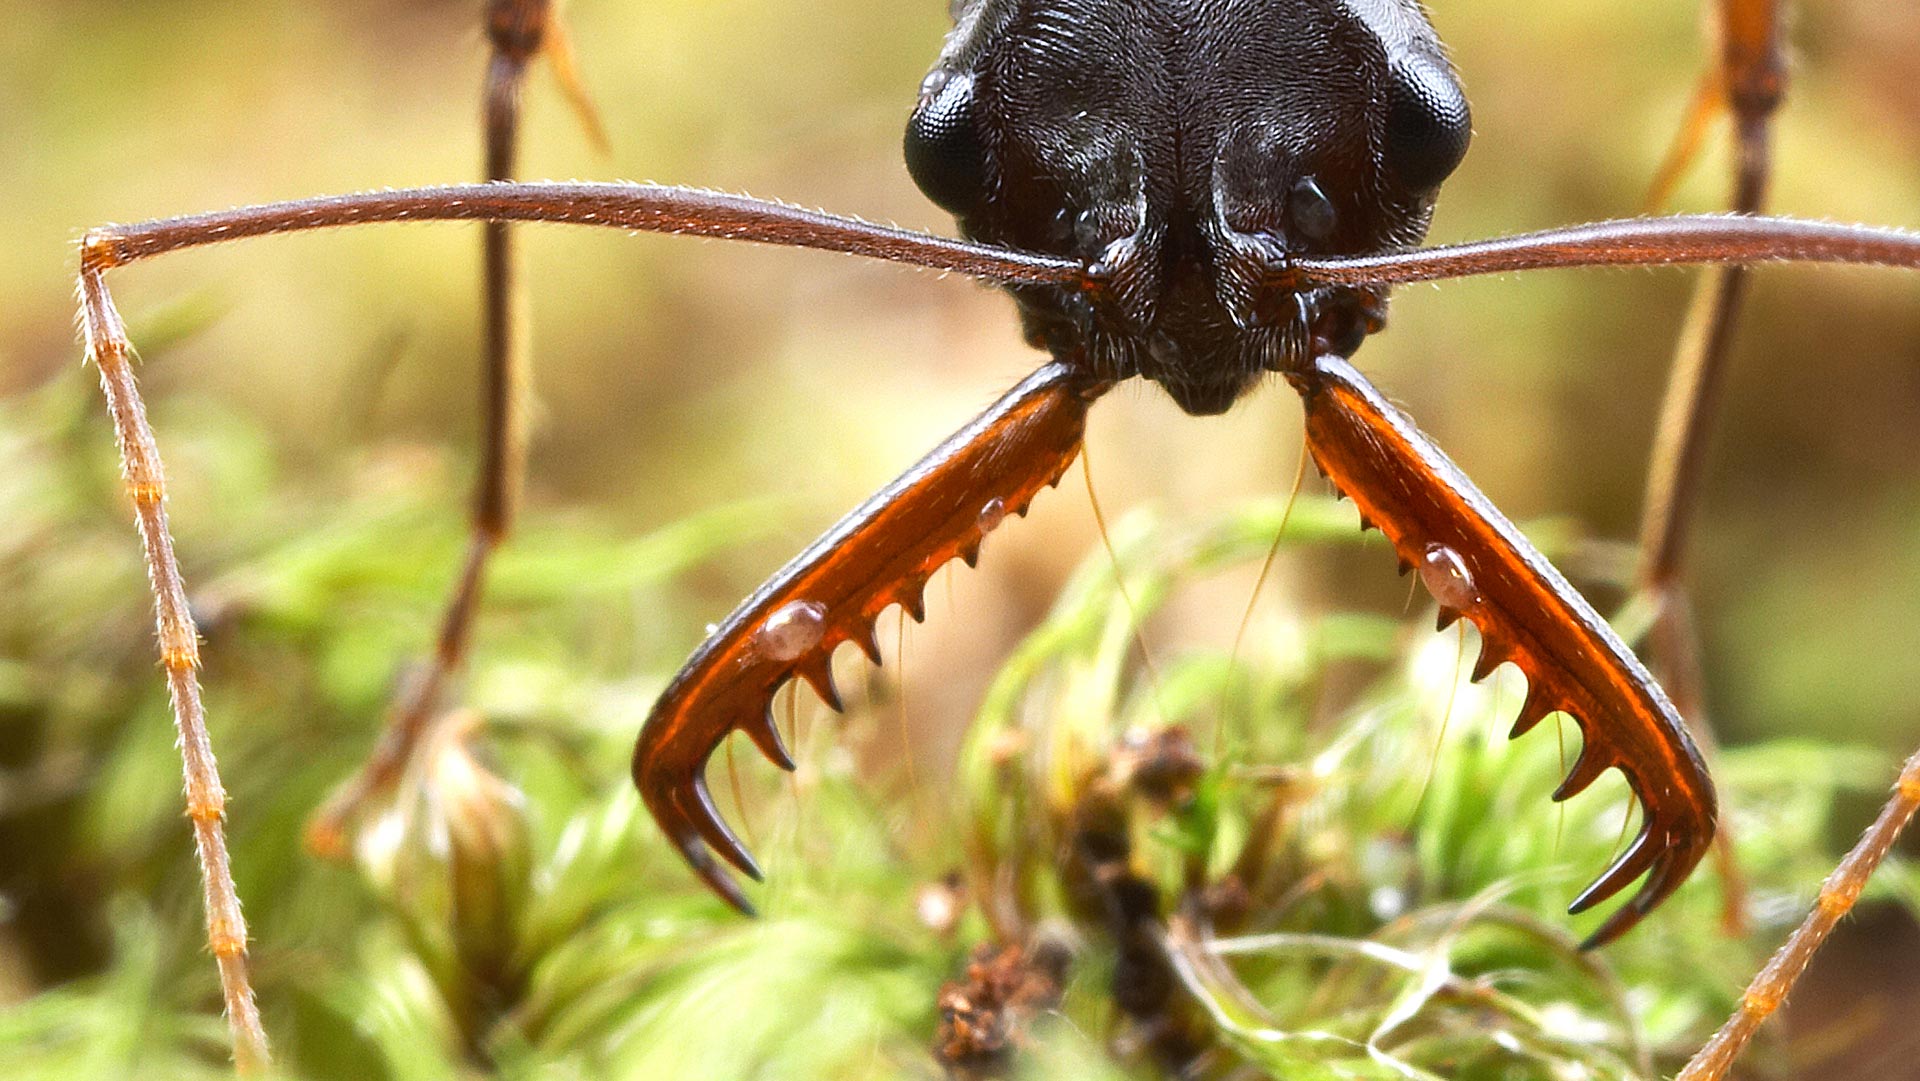 Wild ants photo